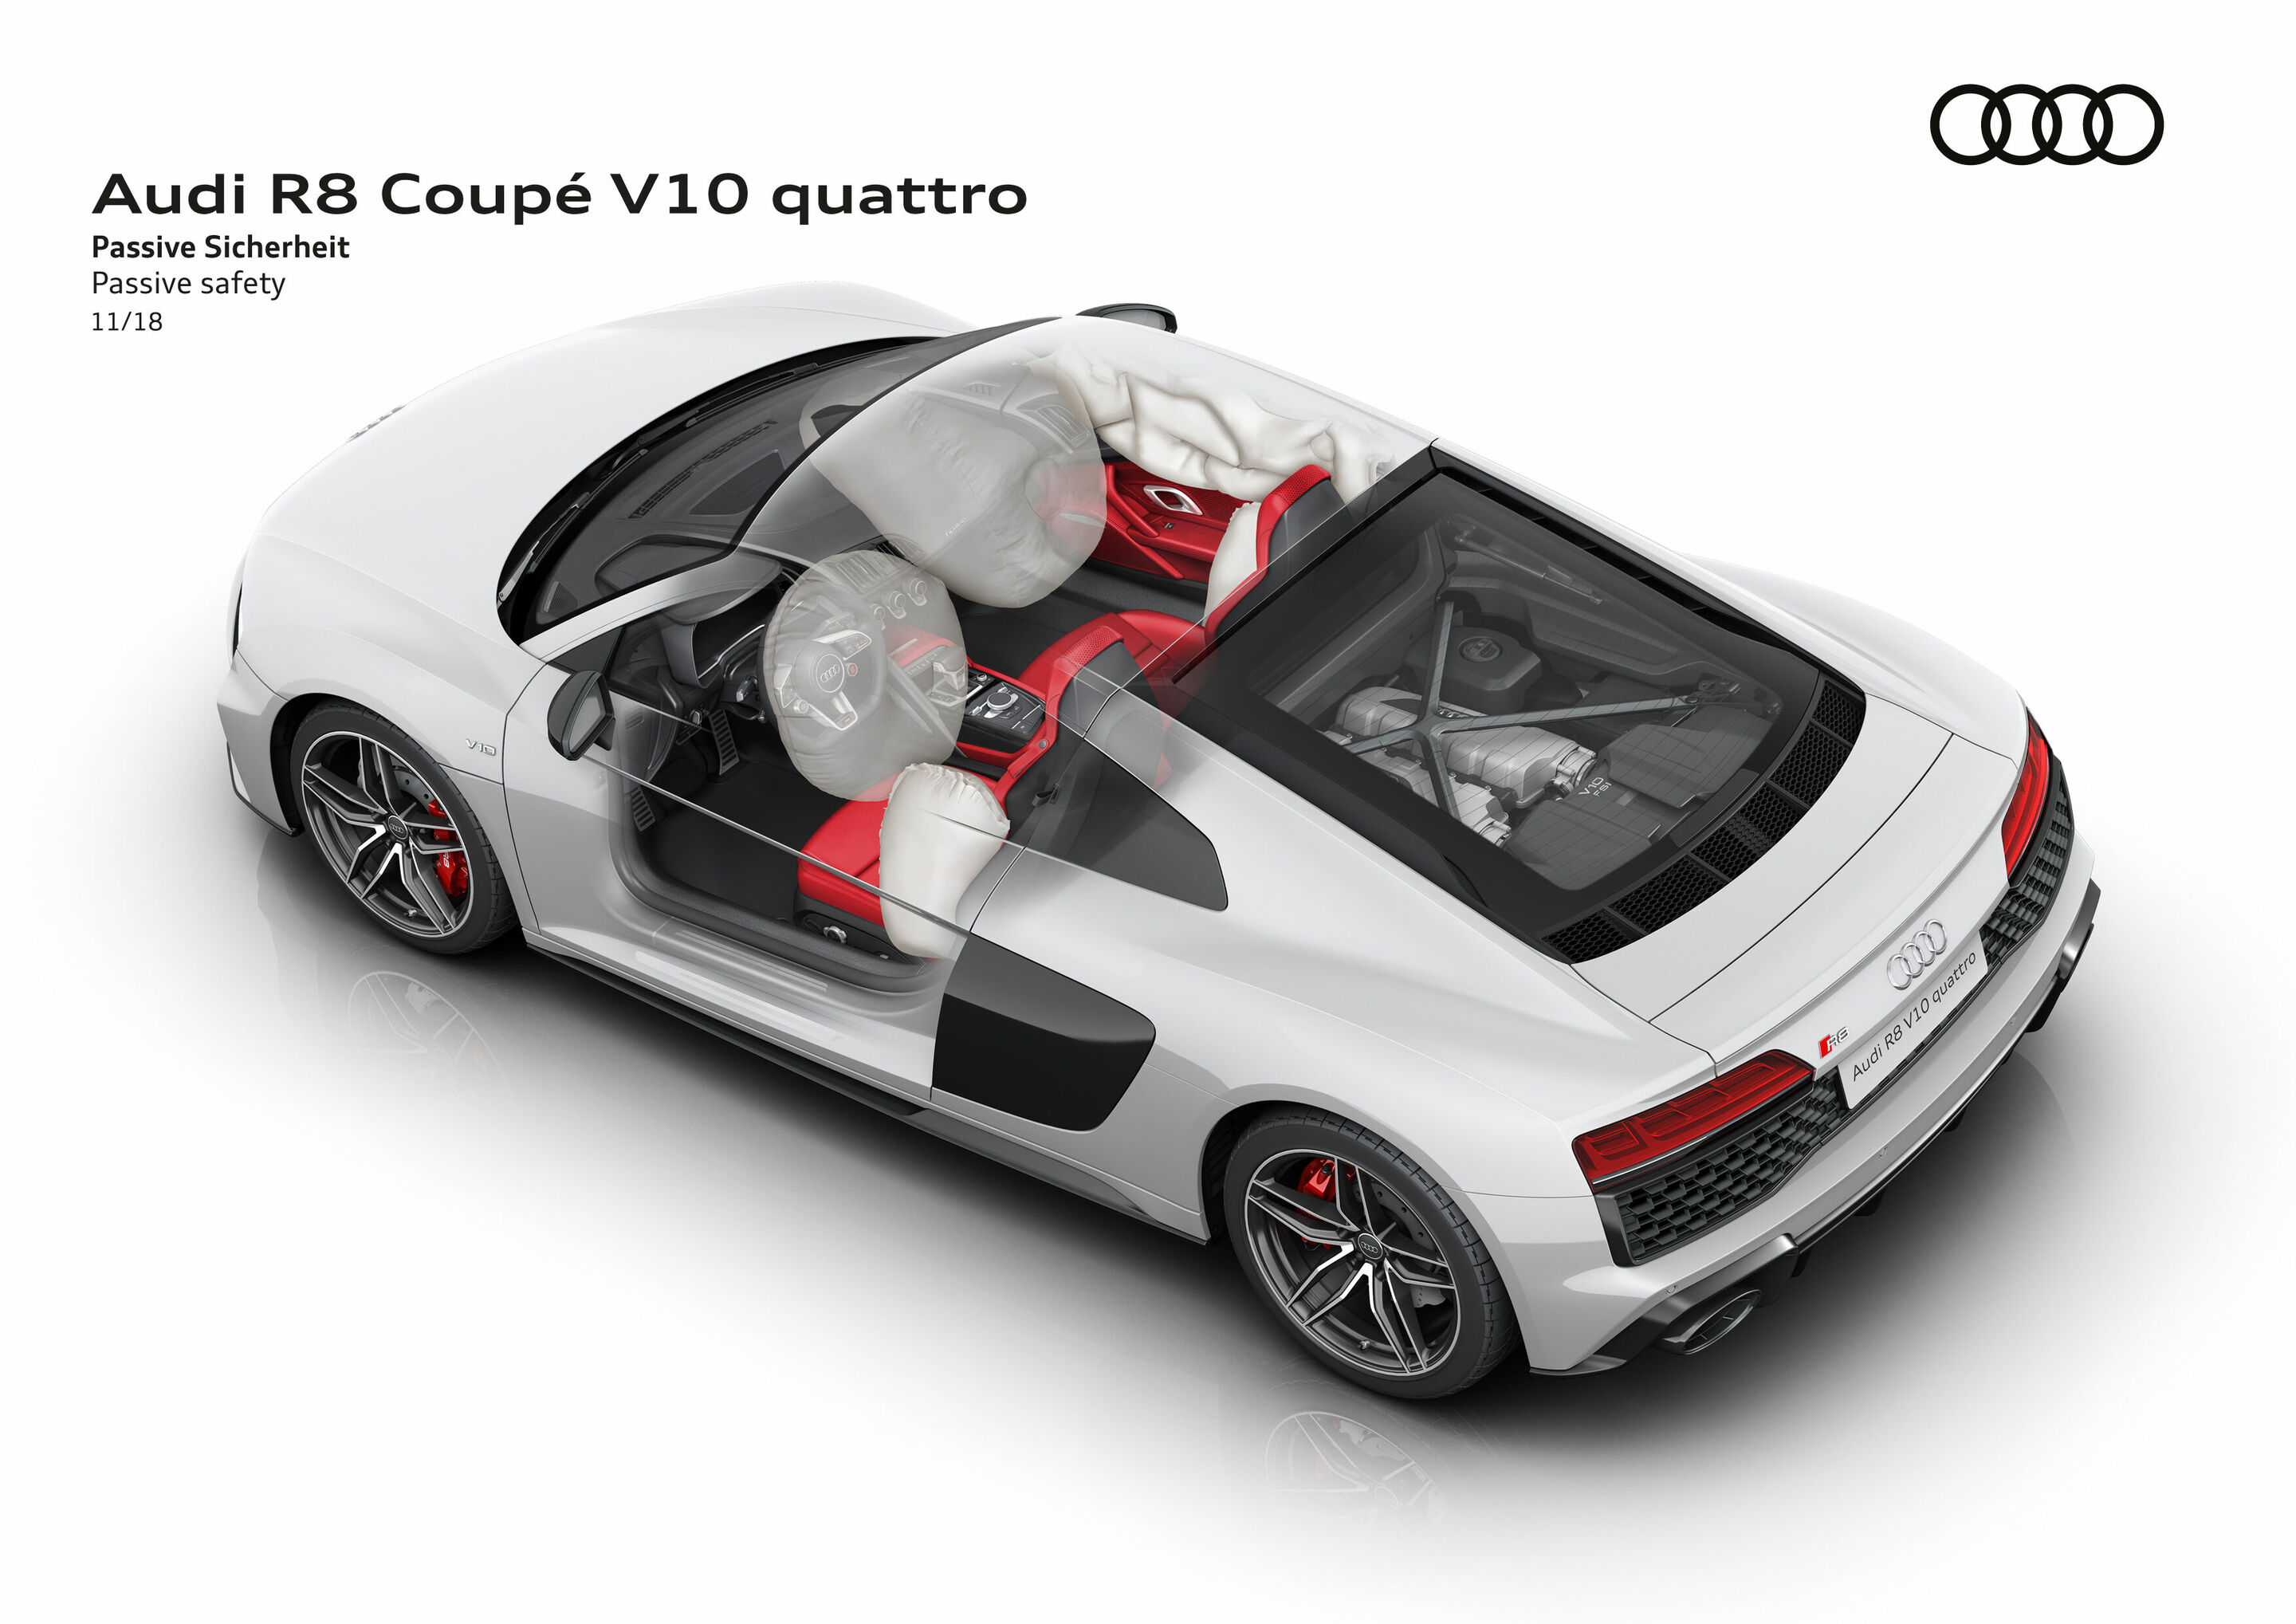 Audi R8 Coupé V10 quattro